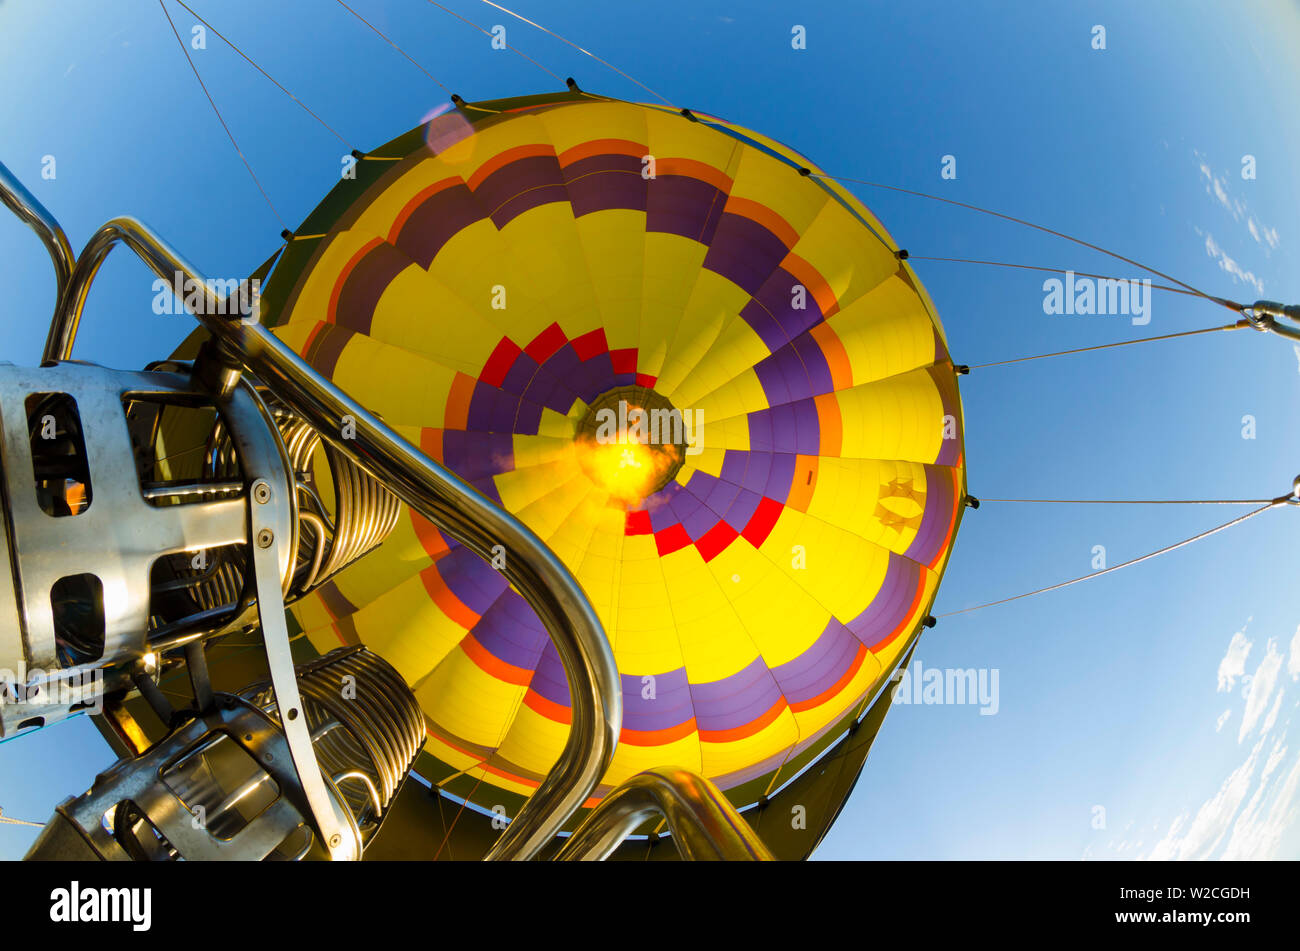 USA, New Mexico, Albuquerque, Albuquerque International Balloon Fiesta Stockfoto